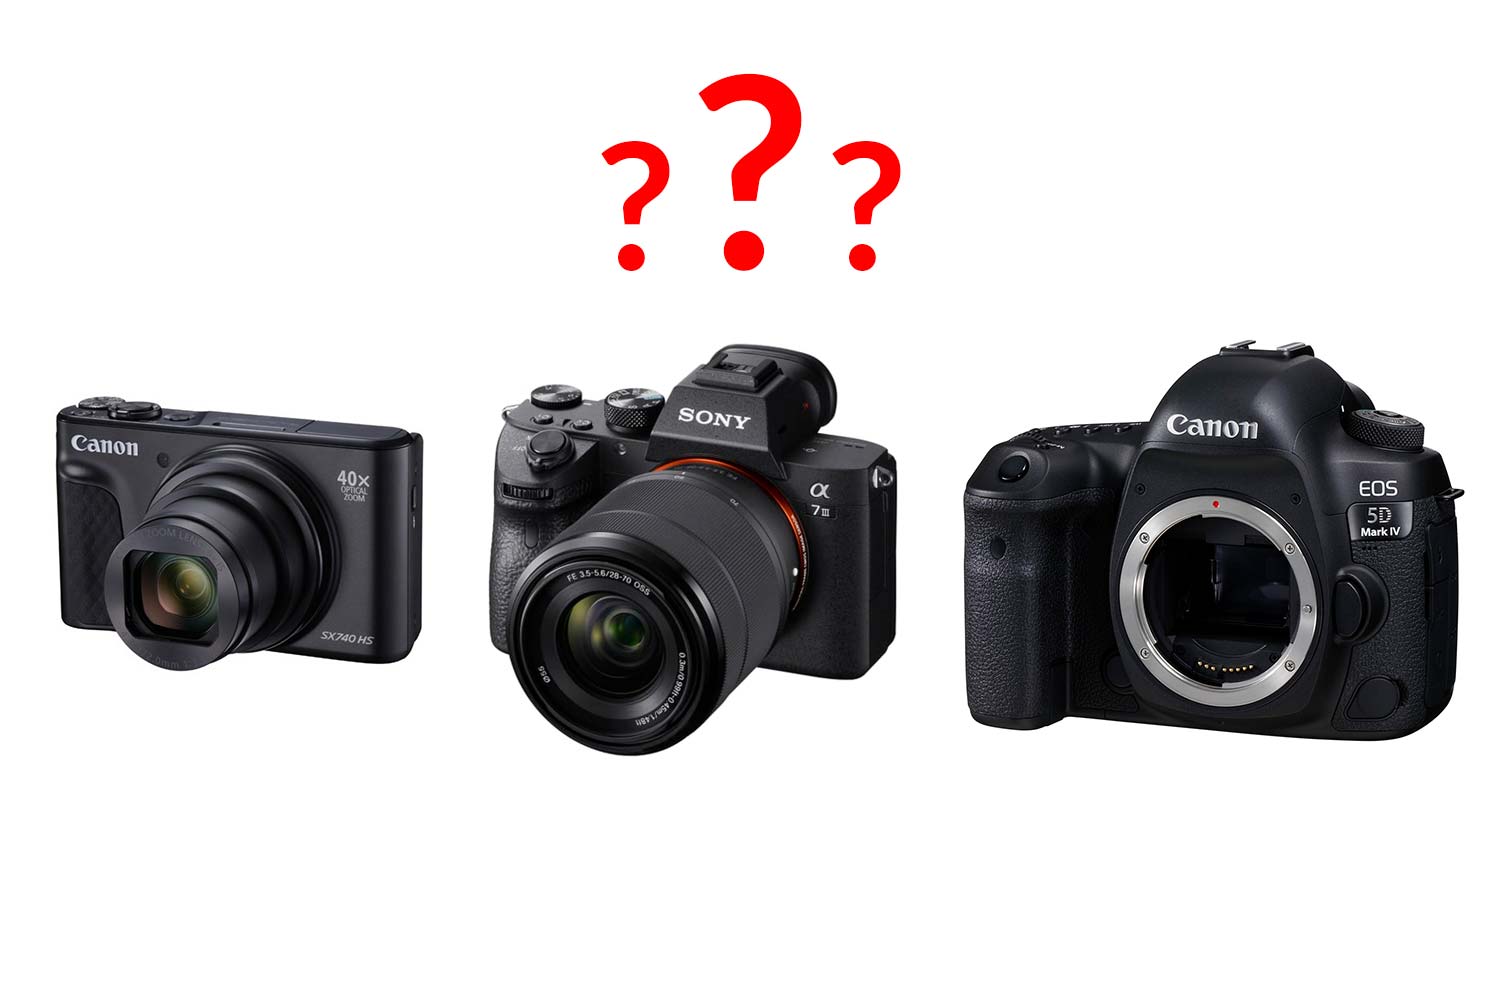 Welche Kamerasystem ist das richtige für mich? Sollte ich eine DSLR (Spiegelreflex Kamera), eine DSLM (spiegellose Systemkamera), eine Bridgekamera oder eine Kompaktkamera kaufen